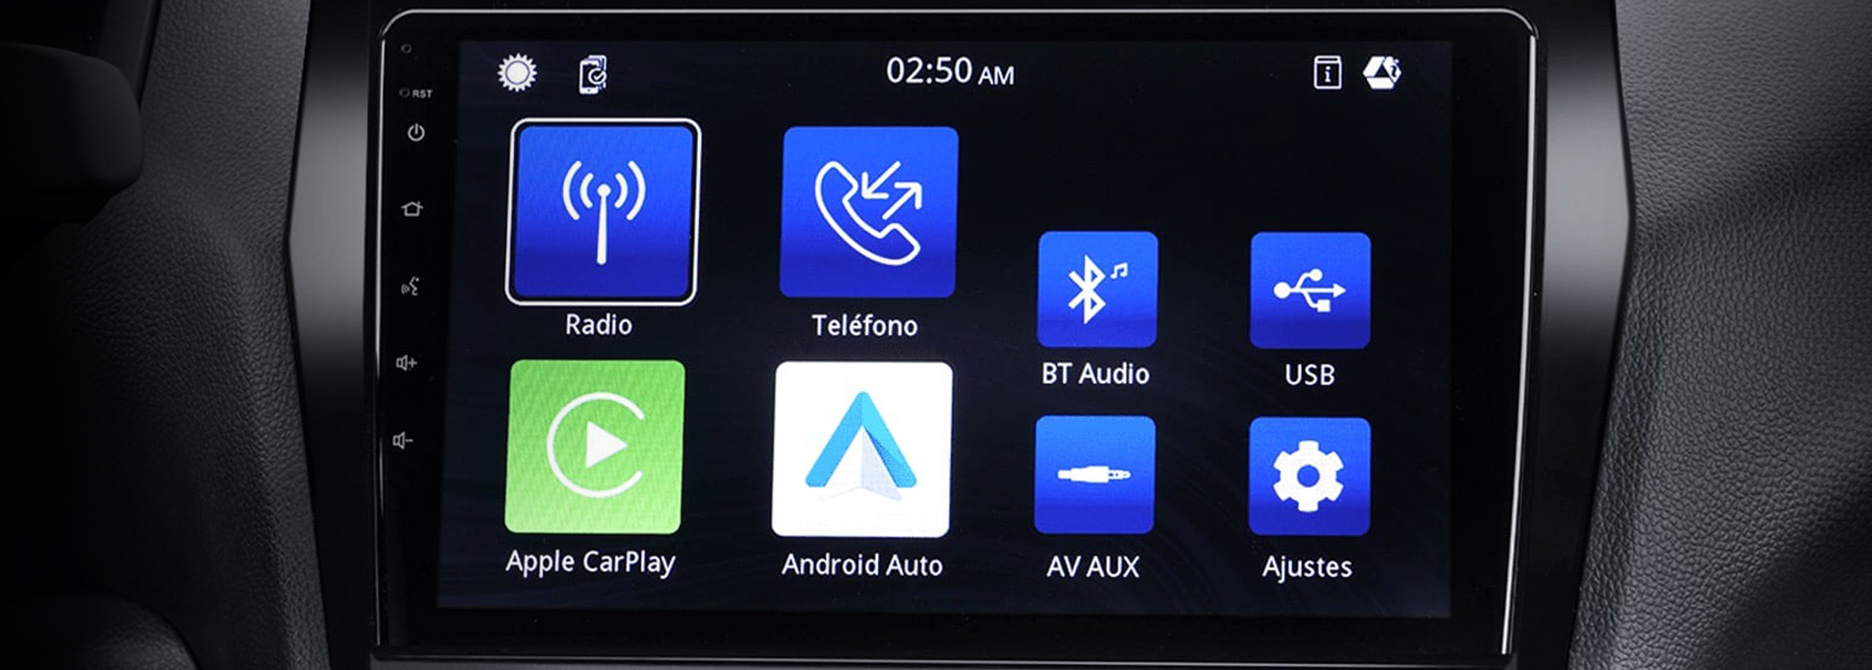 Conectividad Android Auto y Apple CarPlay